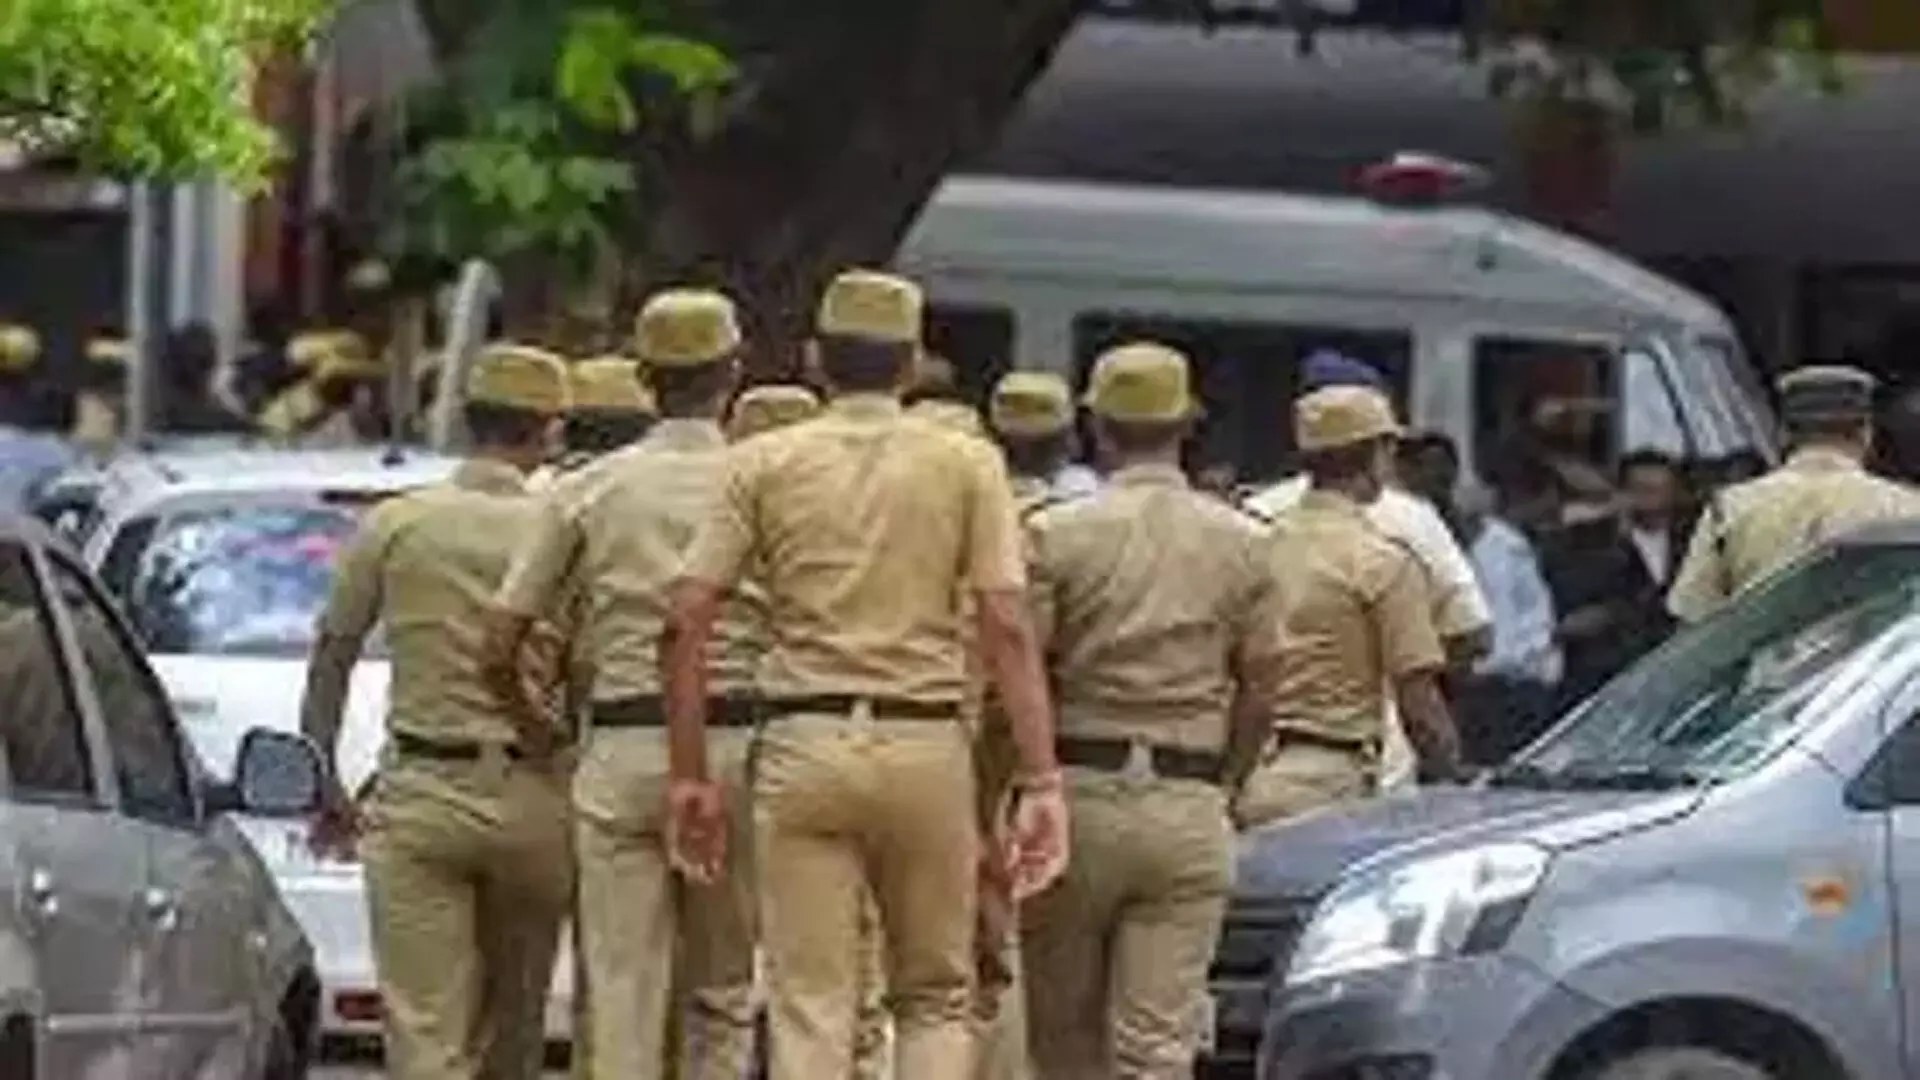 Chennai पुलिस द्वारा जब्त गांजा पेश करने में 678 दिन की देरी के परिणामस्वरूप आरोपी बरी